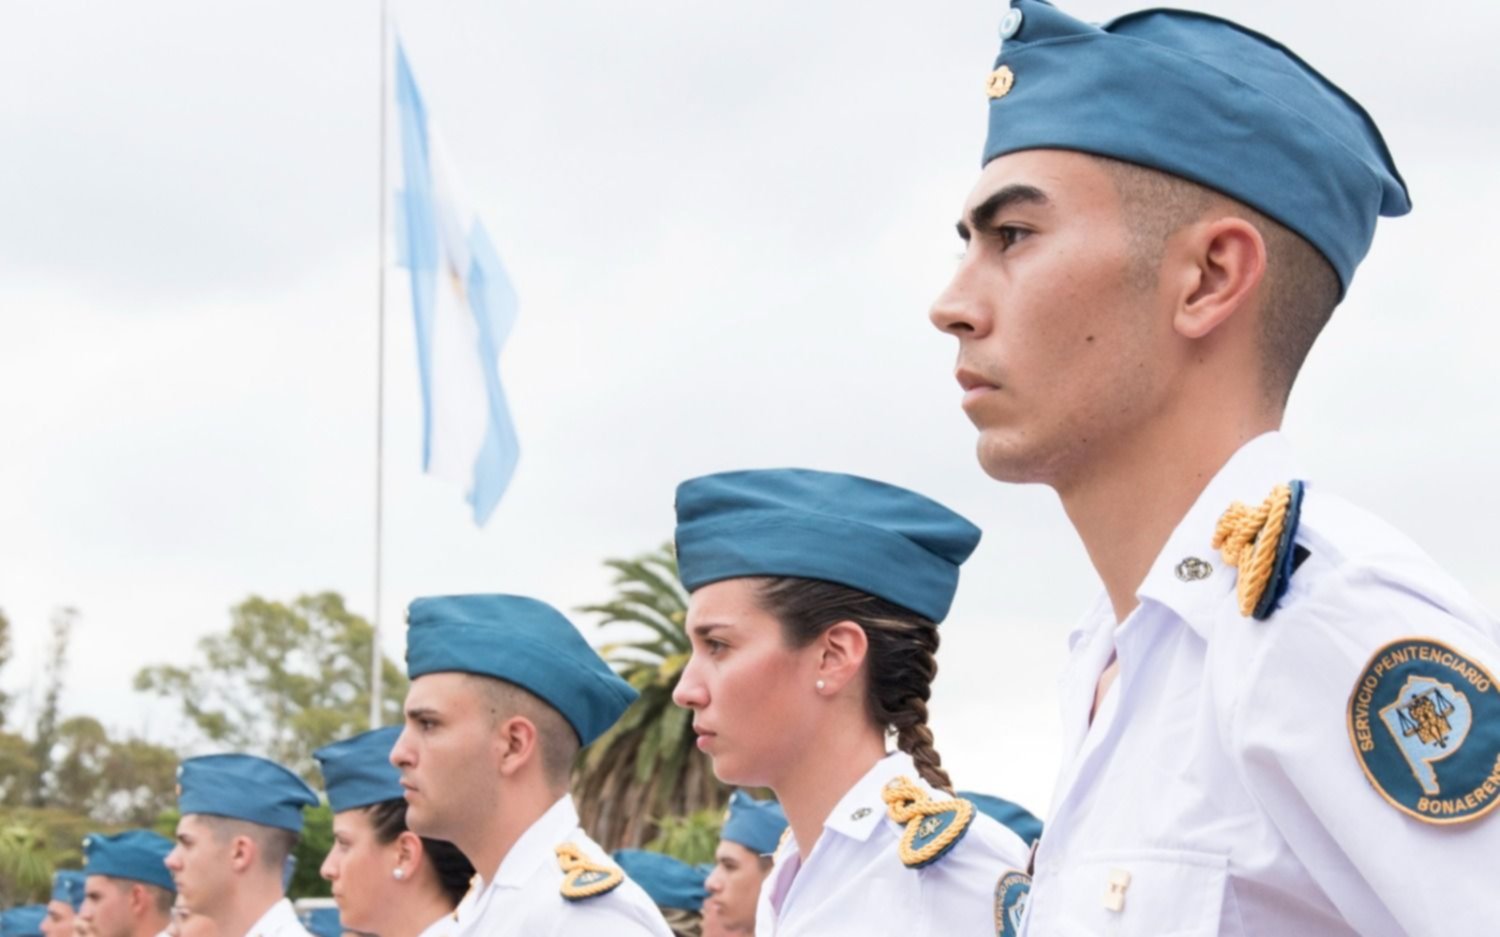 El Servicio Penitenciario Bonaerense abrió la preinscripción para la carrera de oficial en La Plata: requisitos, cómo anotarse y más